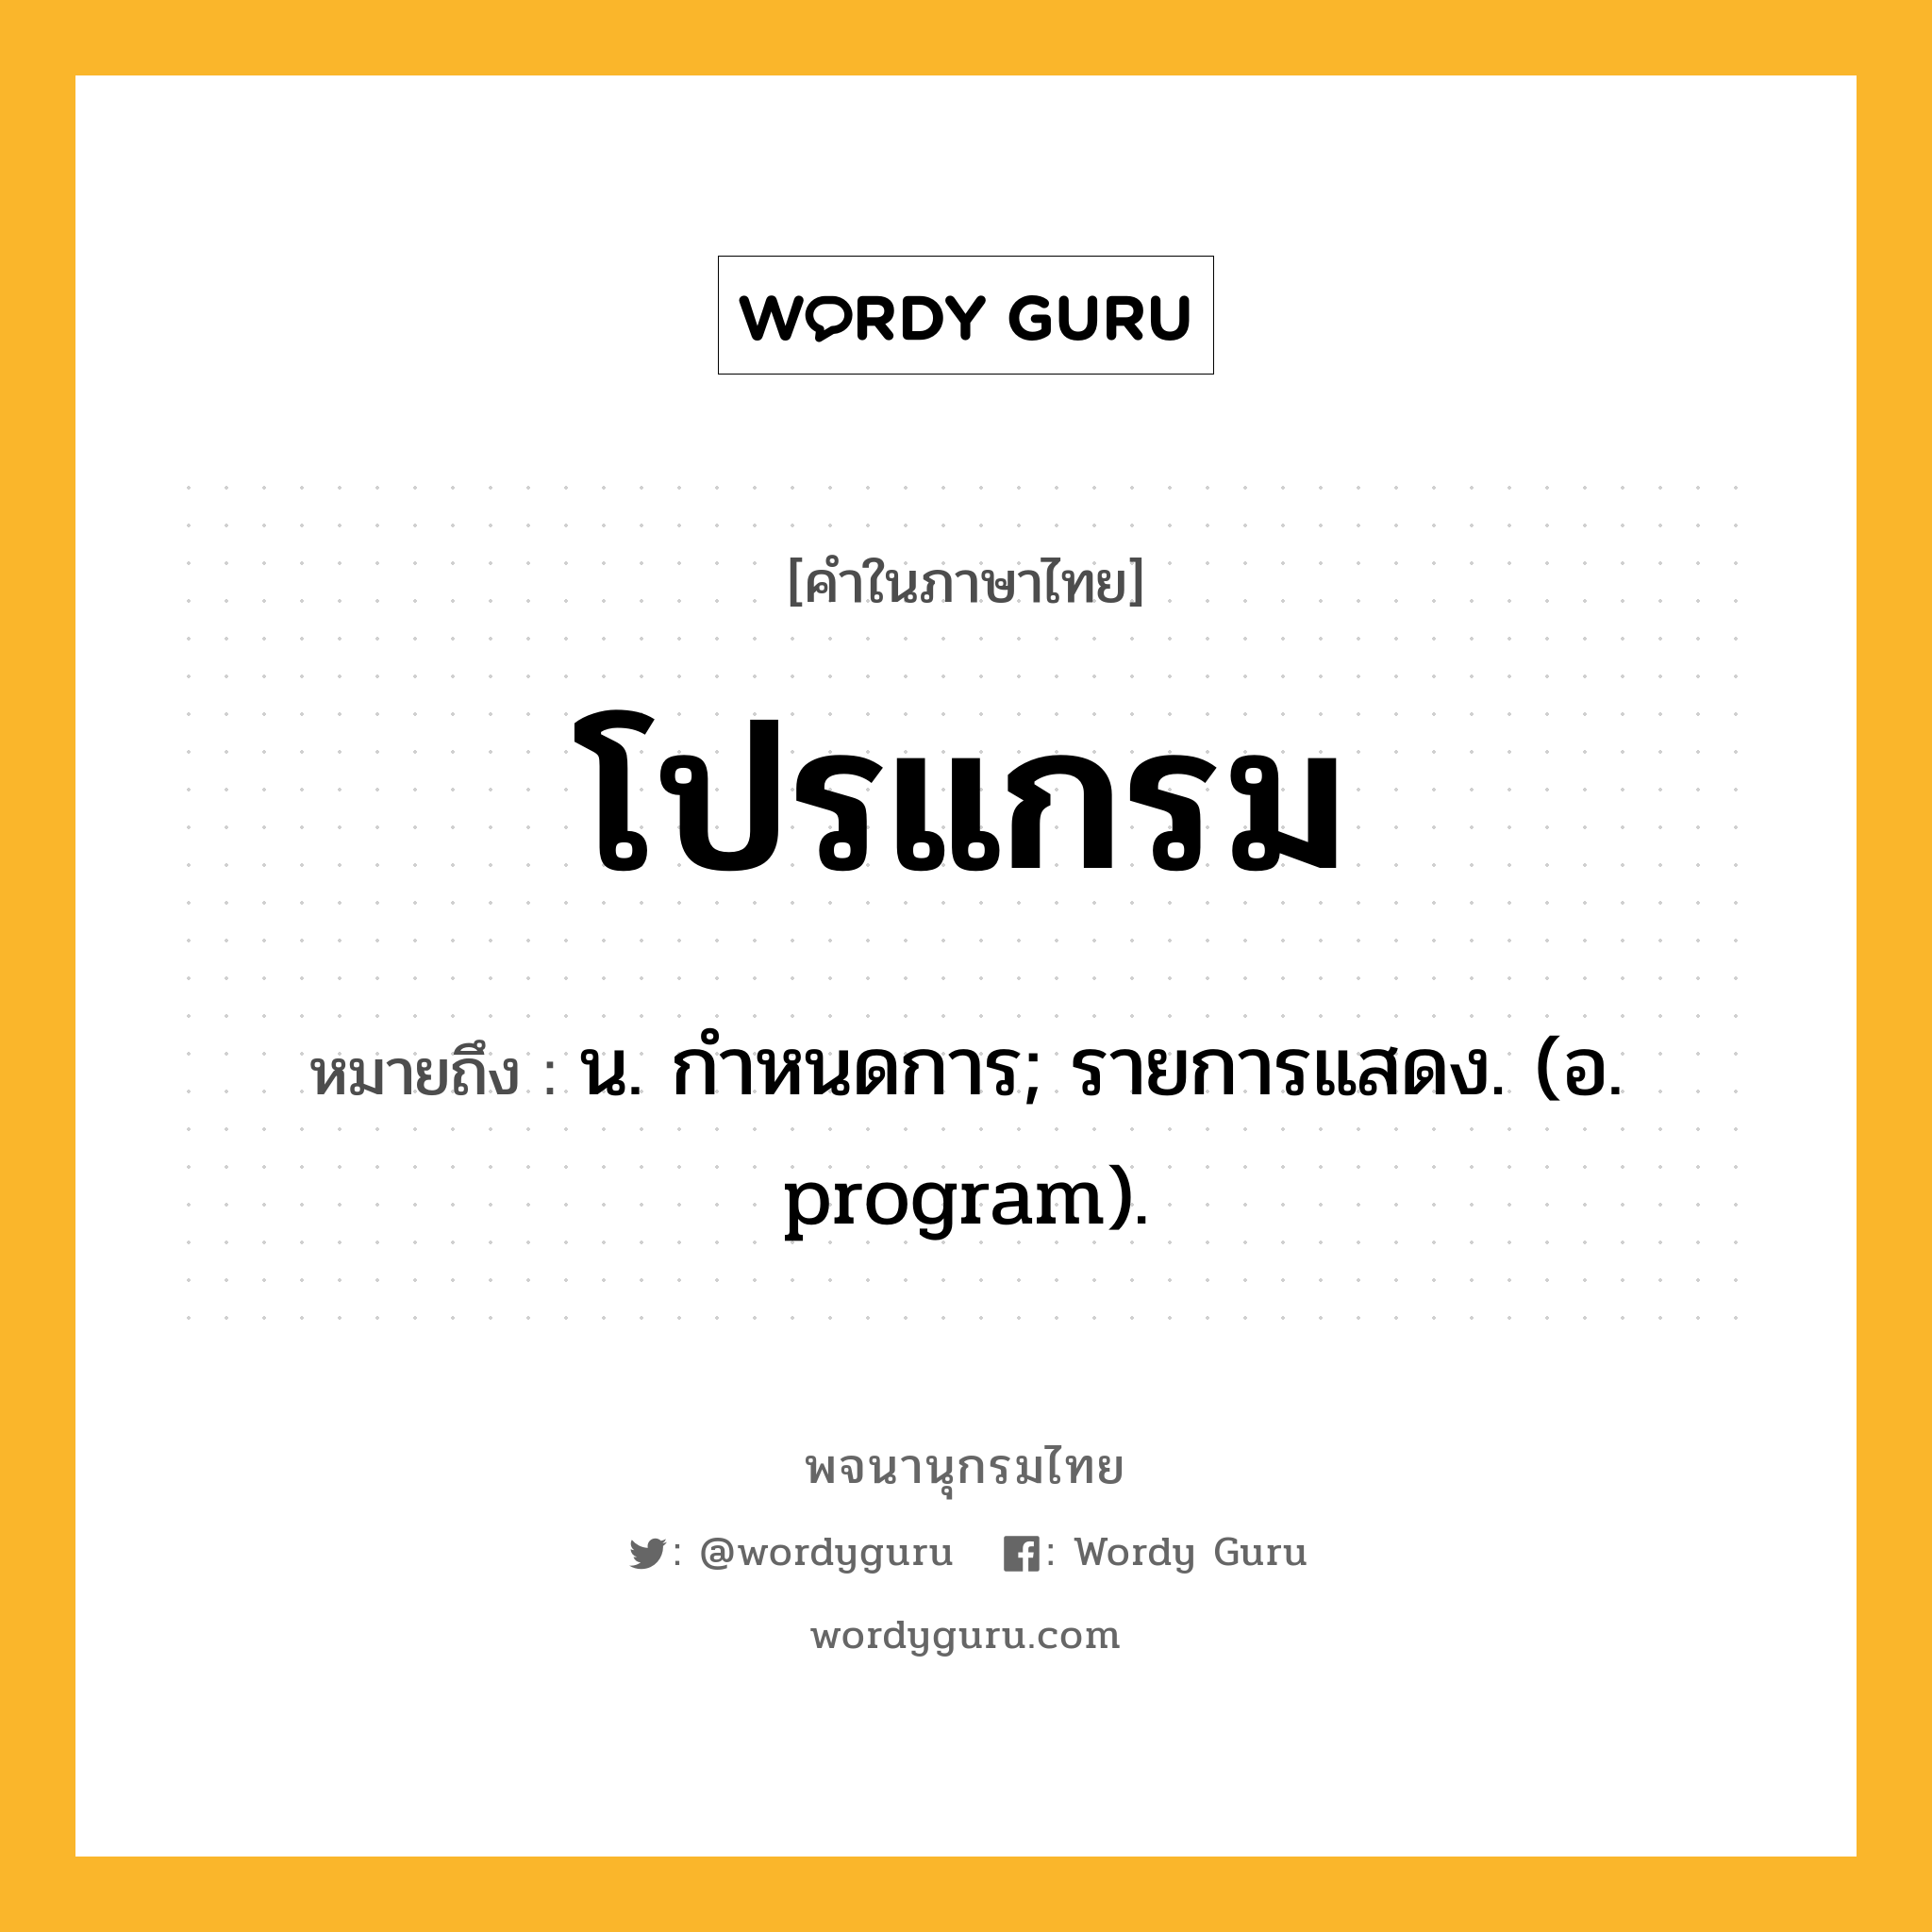 โปรแกรม หมายถึงอะไร?, คำในภาษาไทย โปรแกรม หมายถึง น. กำหนดการ; รายการแสดง. (อ. program).